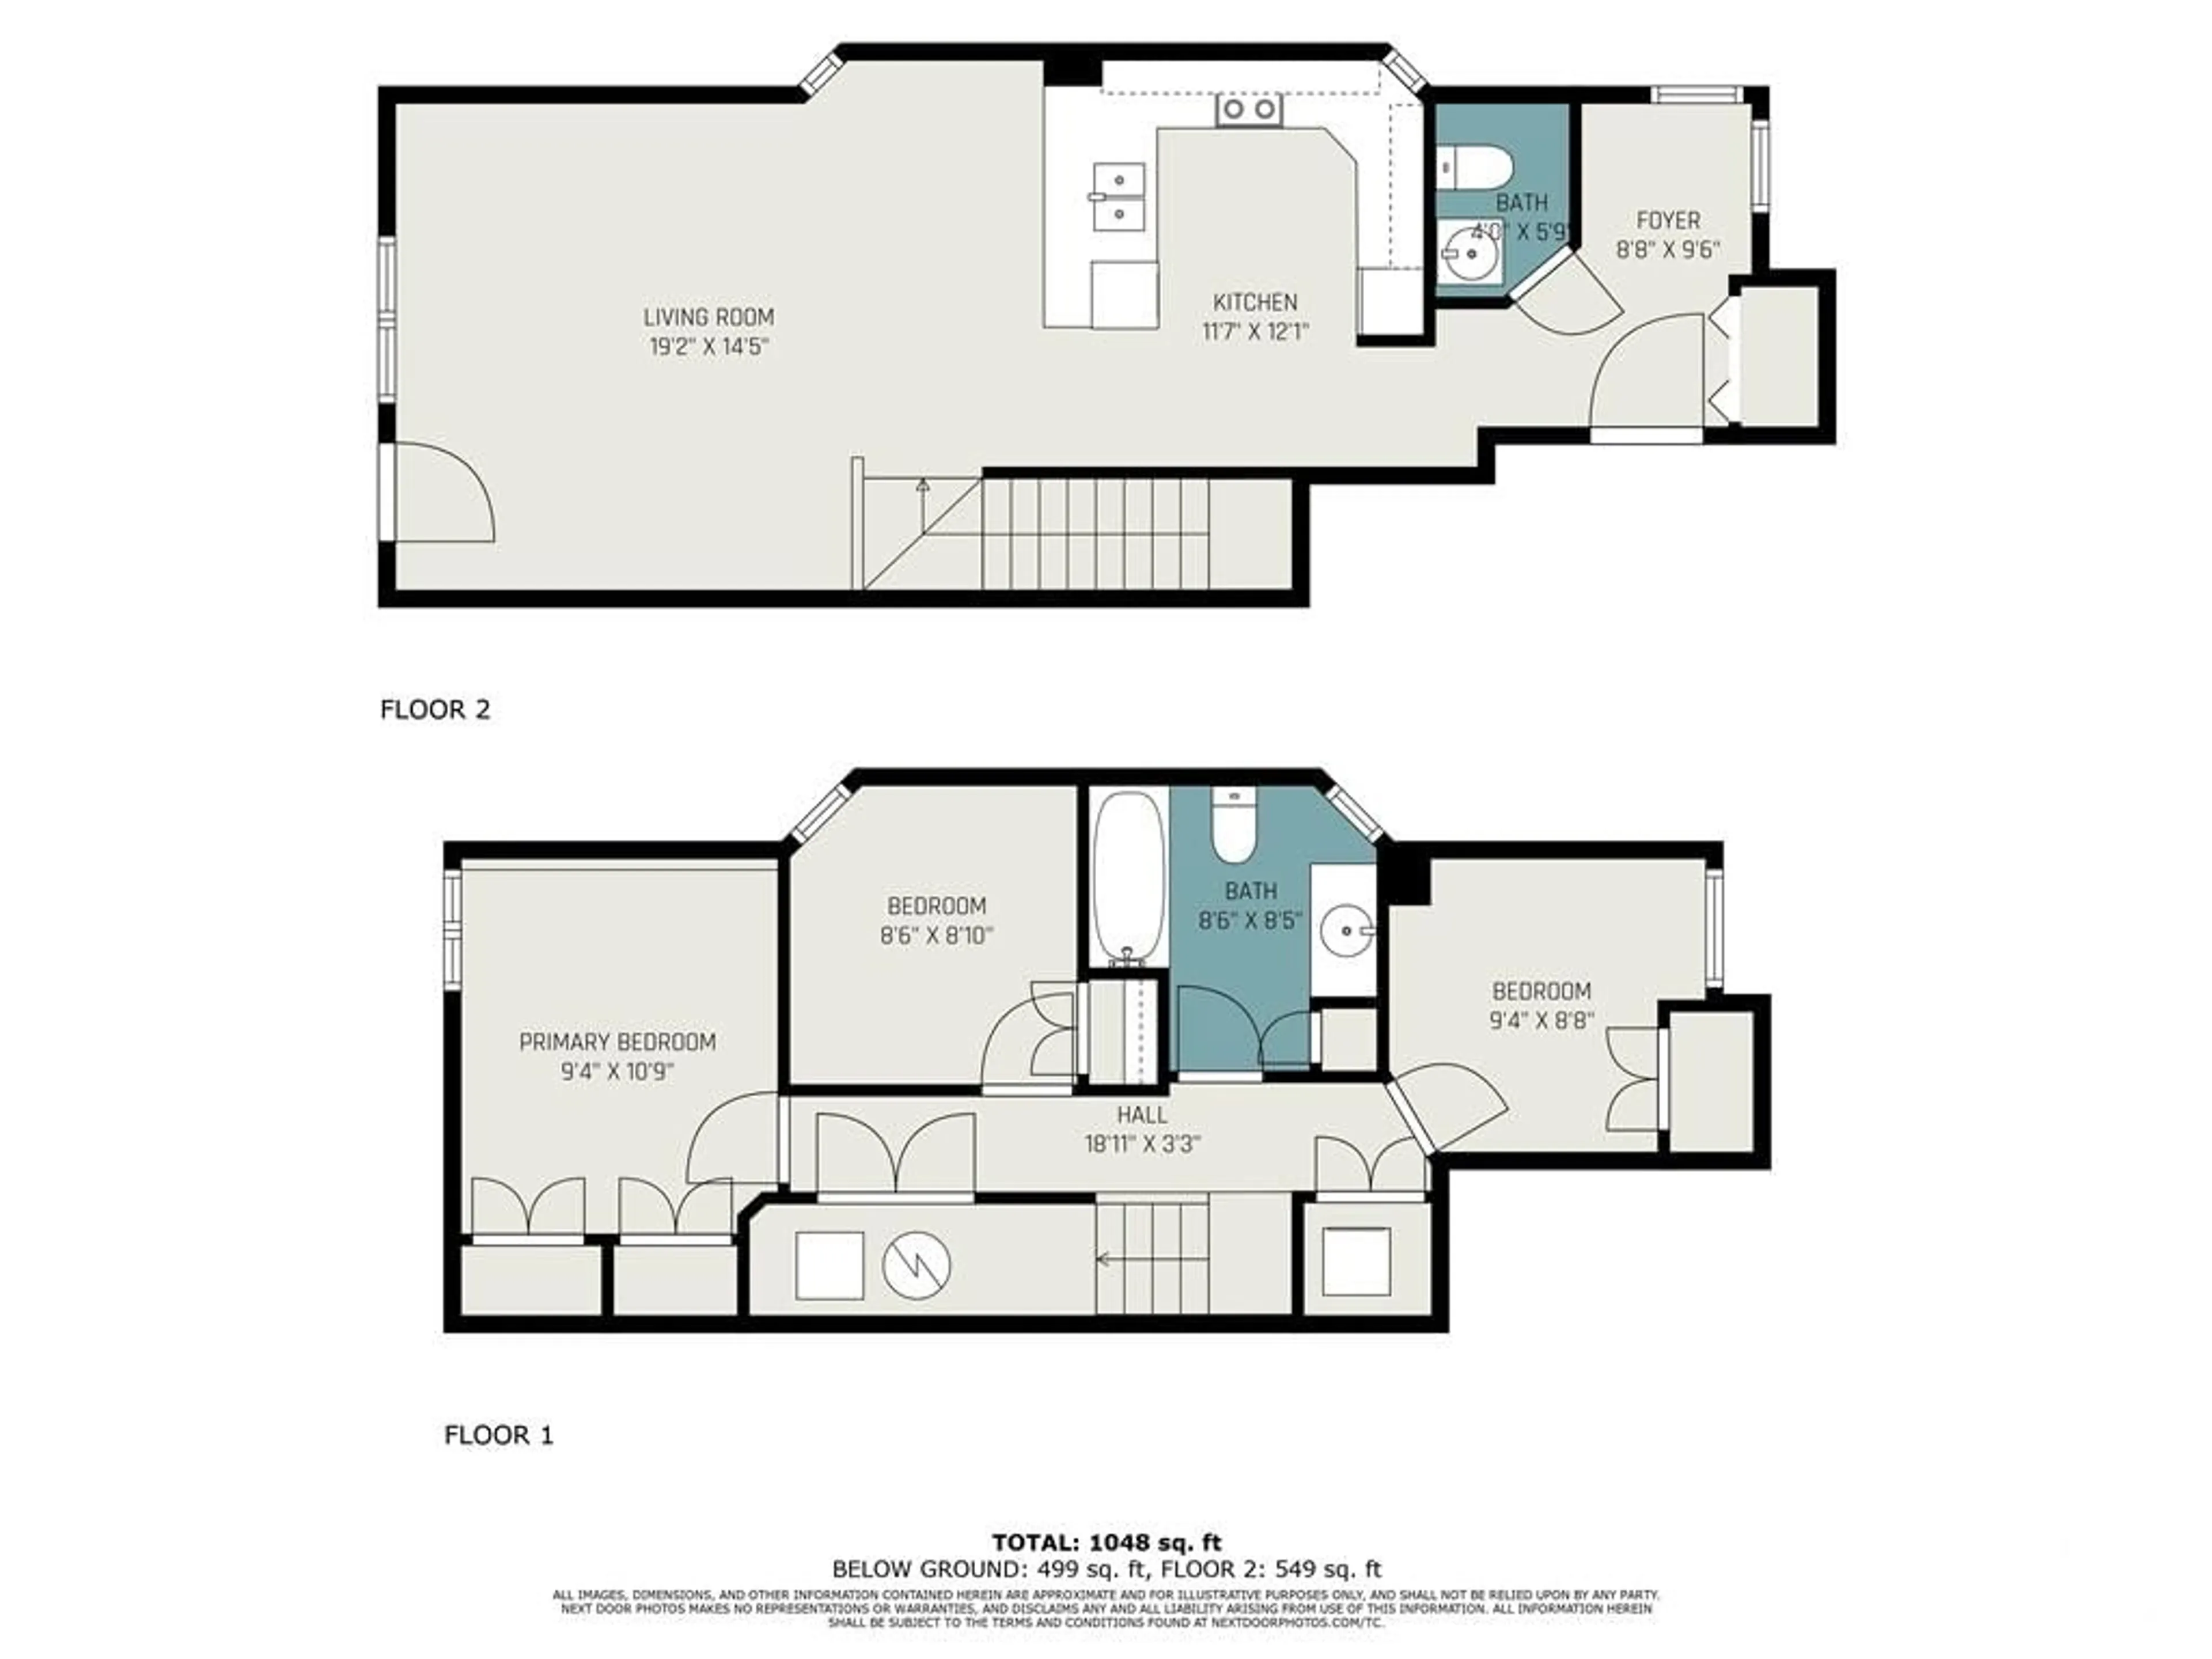 Floor plan for 307 FIR Lane, Kemptville Ontario K0G 1J0